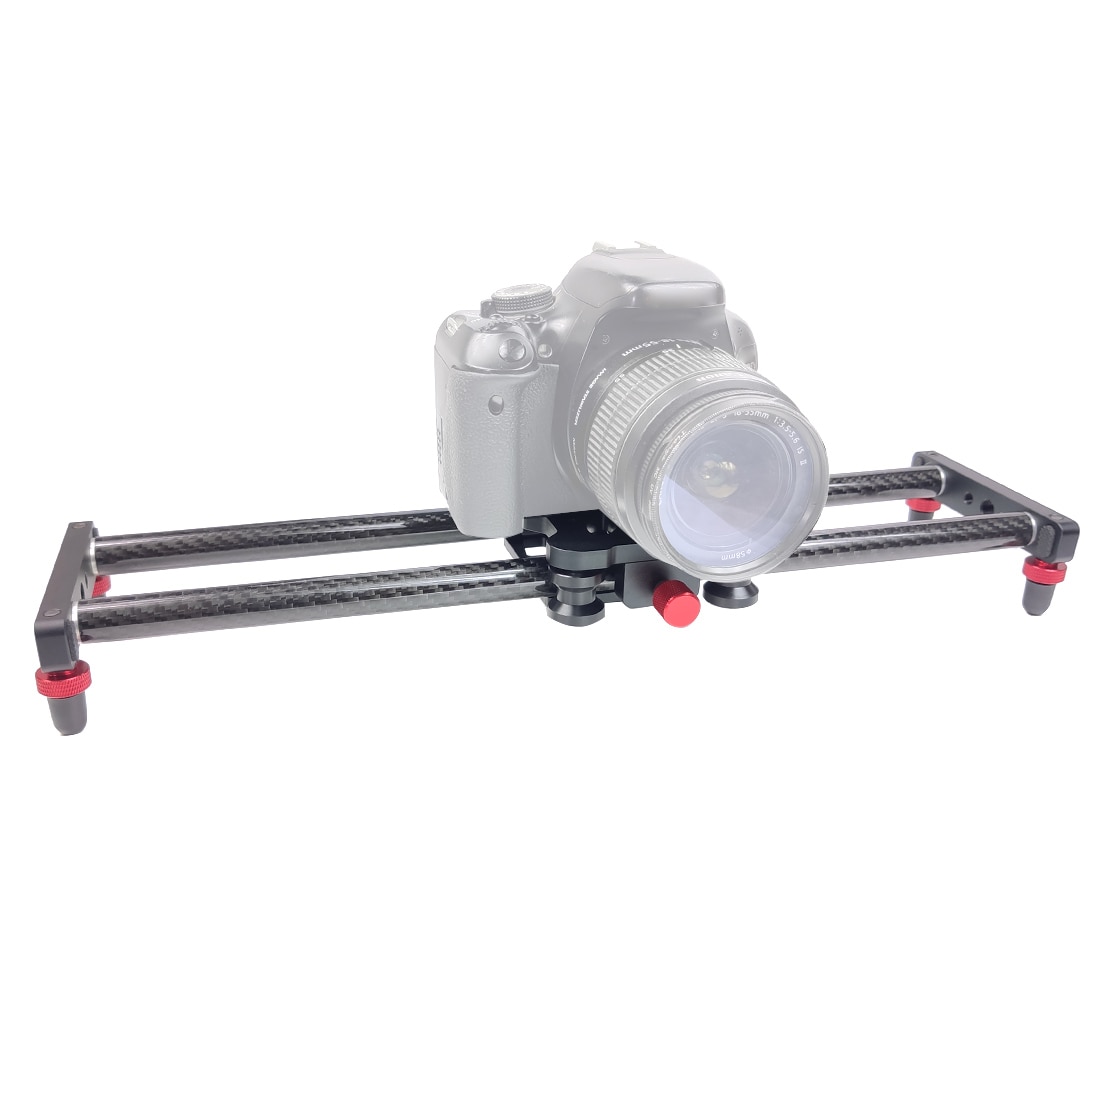 40cm kulfiberkamera sporskyder videostabilisator dslr skinne følg fokus pan camcorder filmoptagelse fotoshoot support 3kg